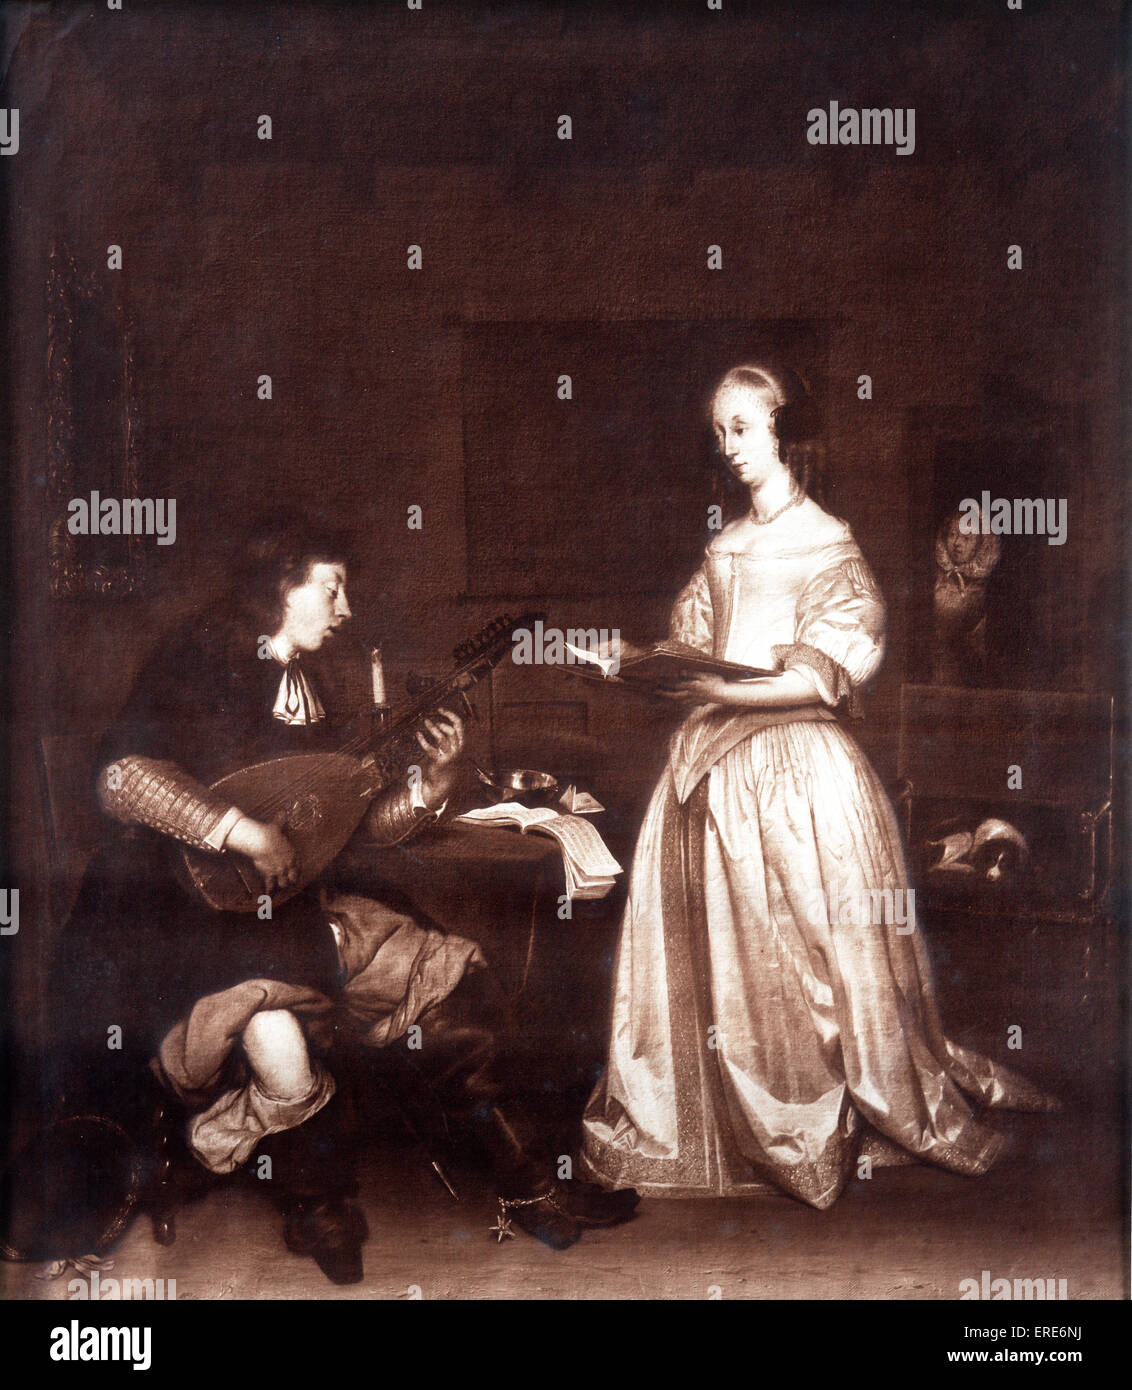 Il duetto: un cantante e un lettore di liuto. Gerard ter Borch 1617 - 1681. Olandese di epoca barocca pittore. Riproduzione di seppia. Foto Stock